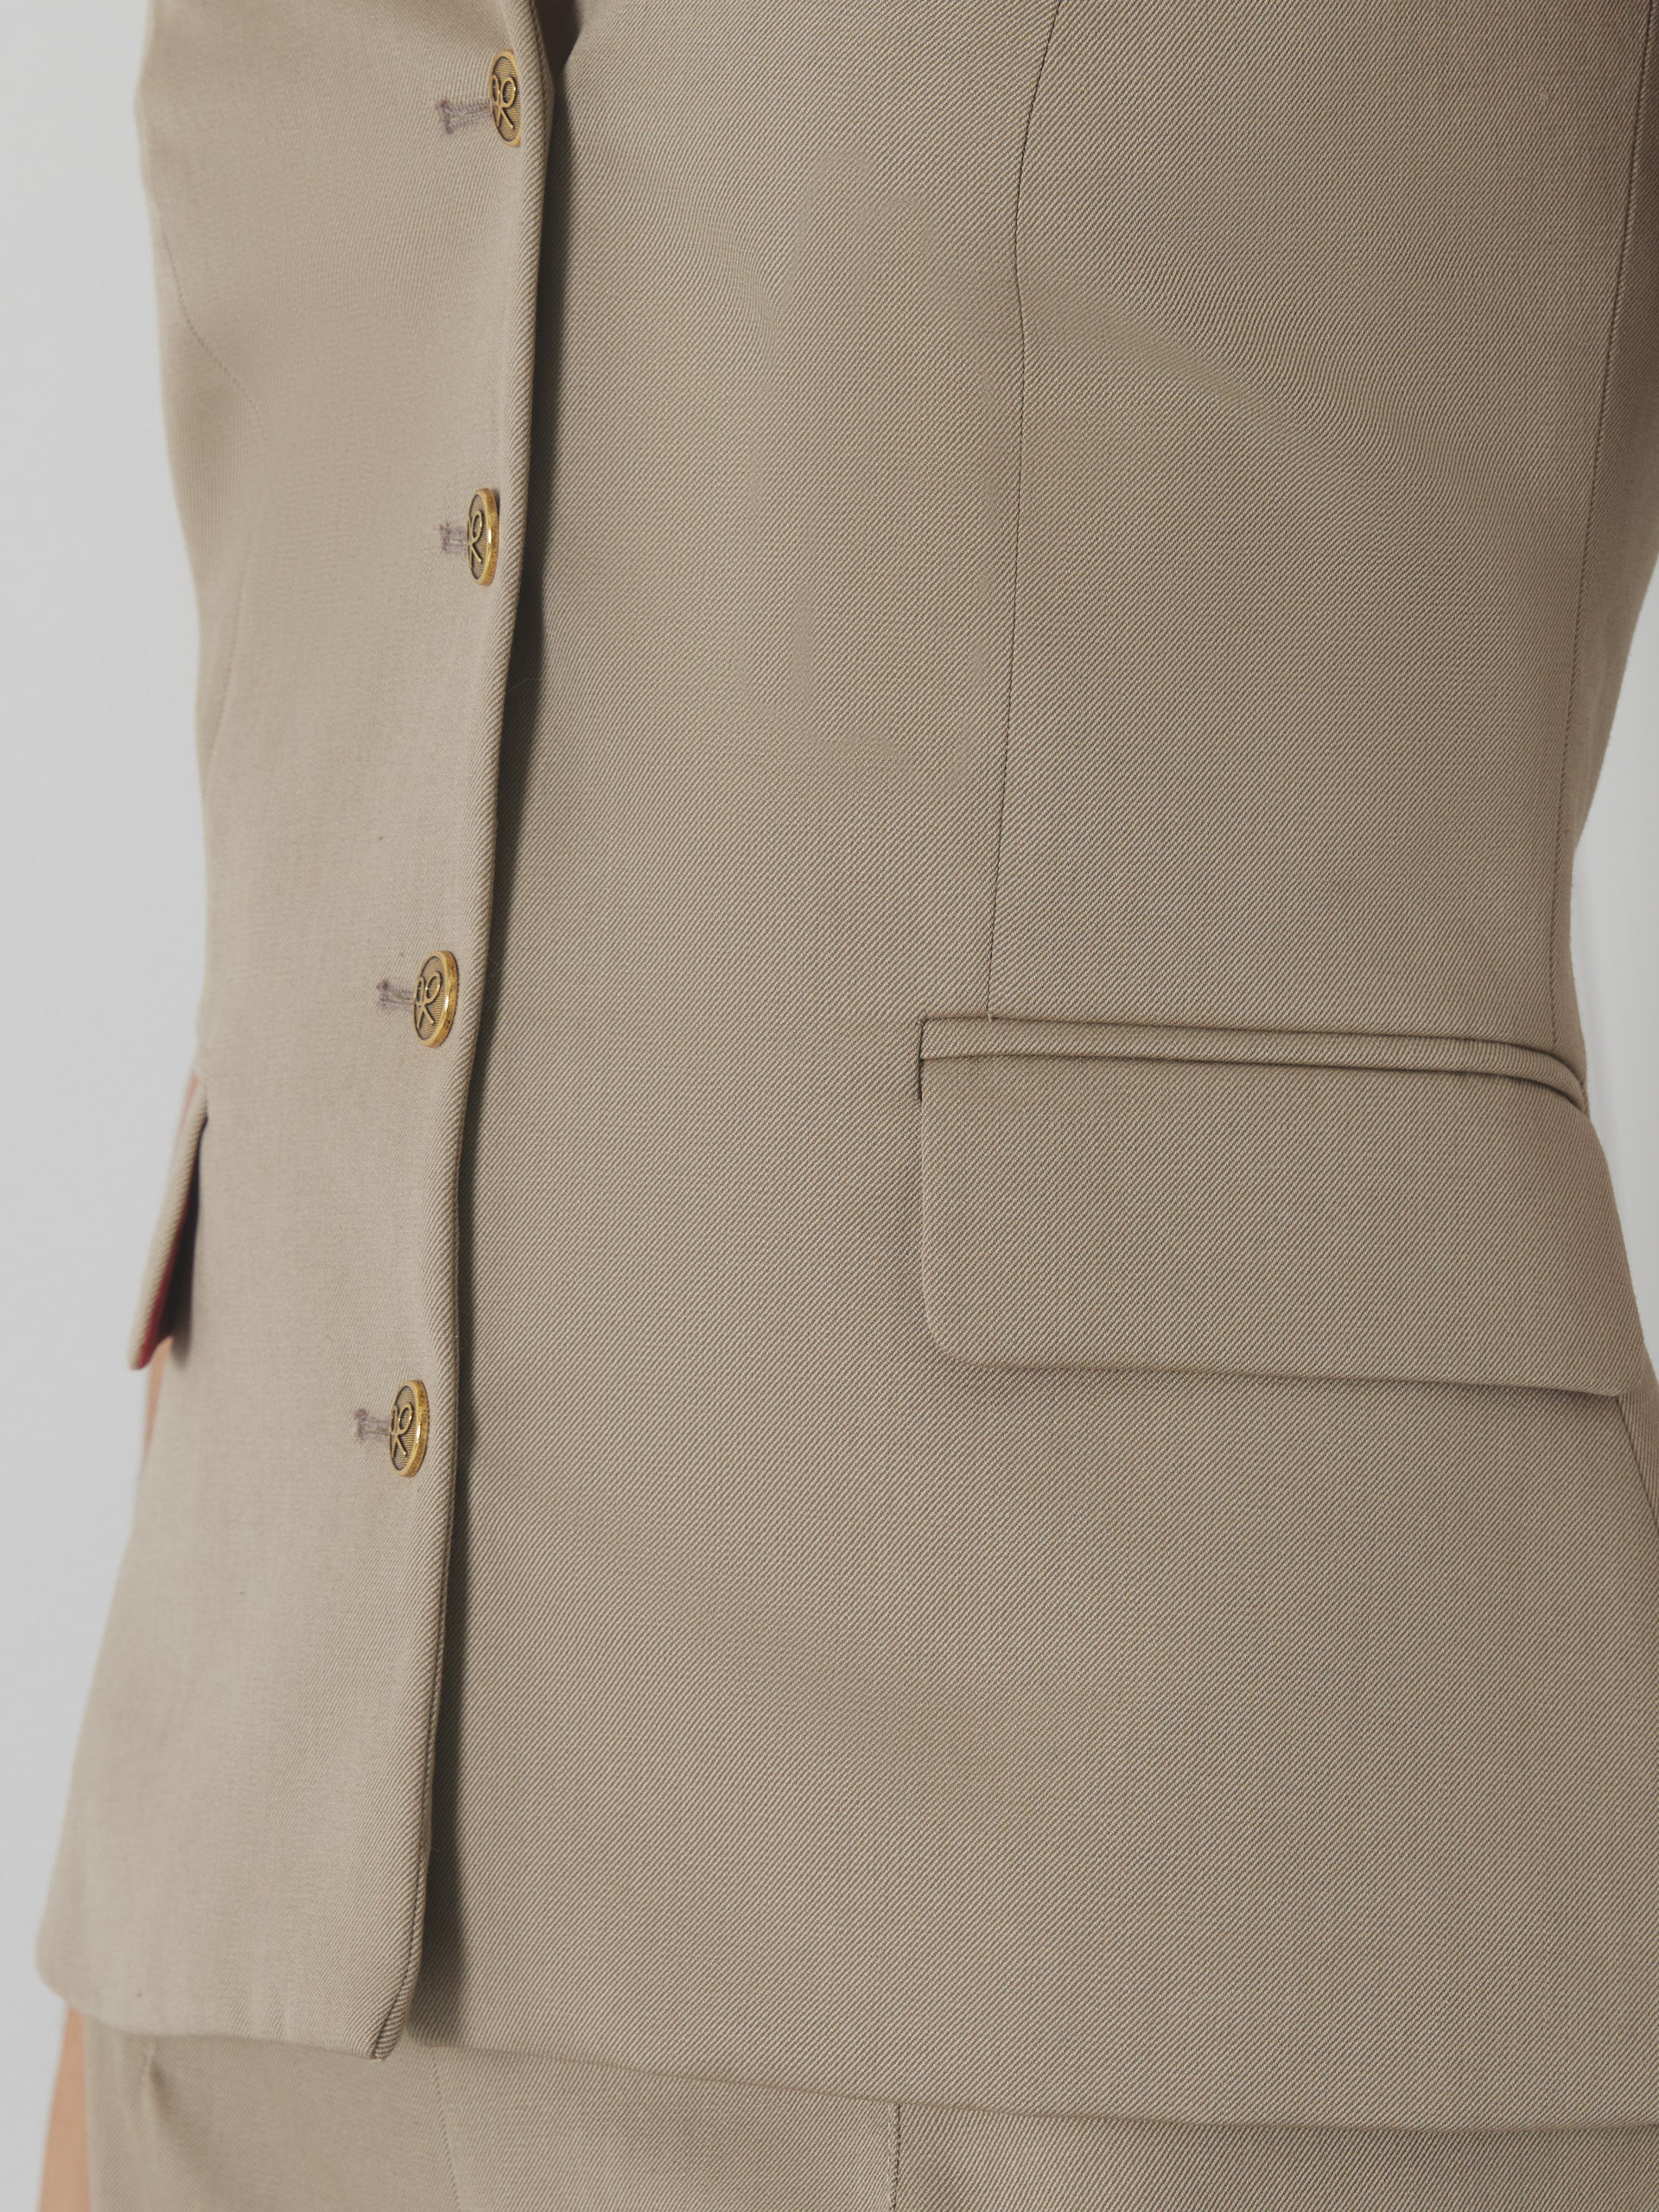 Unique woman vest with beige buttons